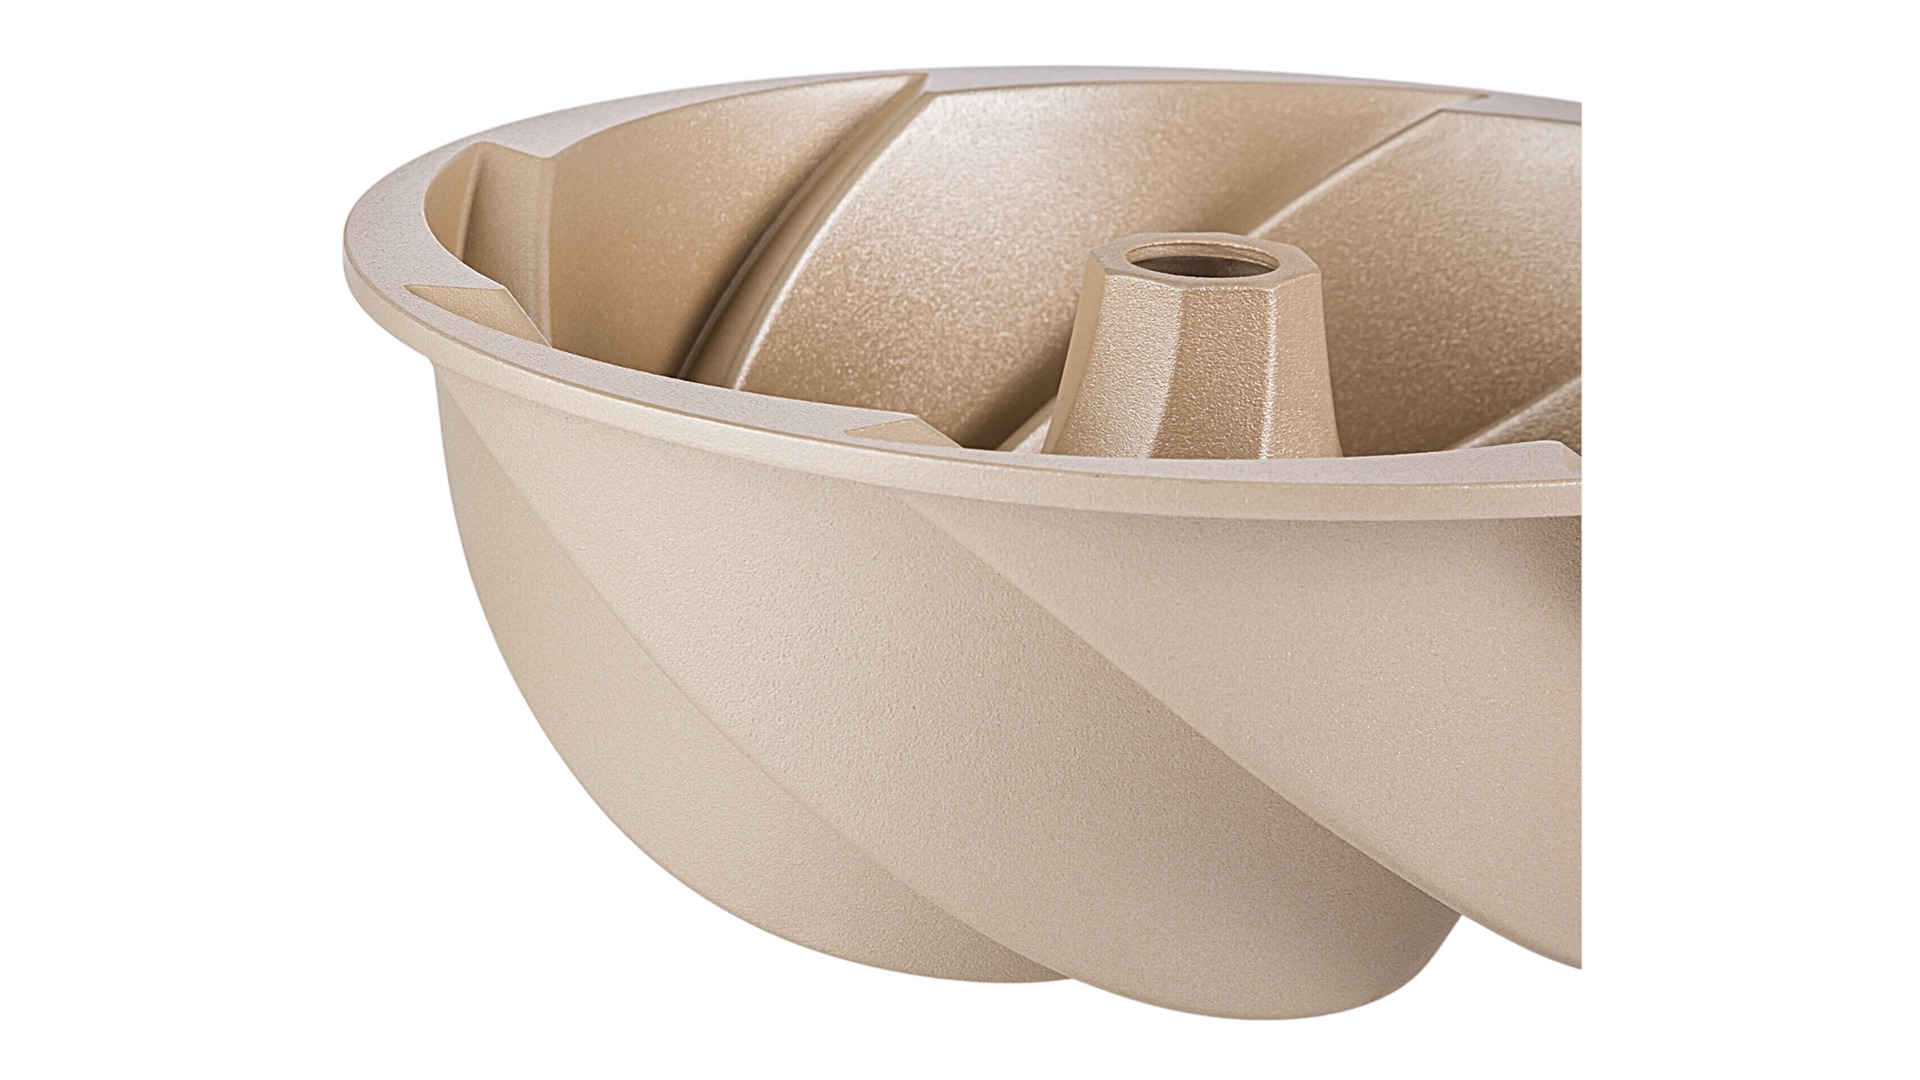 Форма для выпечки круглая WO HOME 3D Magic Baking 24х9 см, 1,5 л, алюминий, антипригарное покрытие